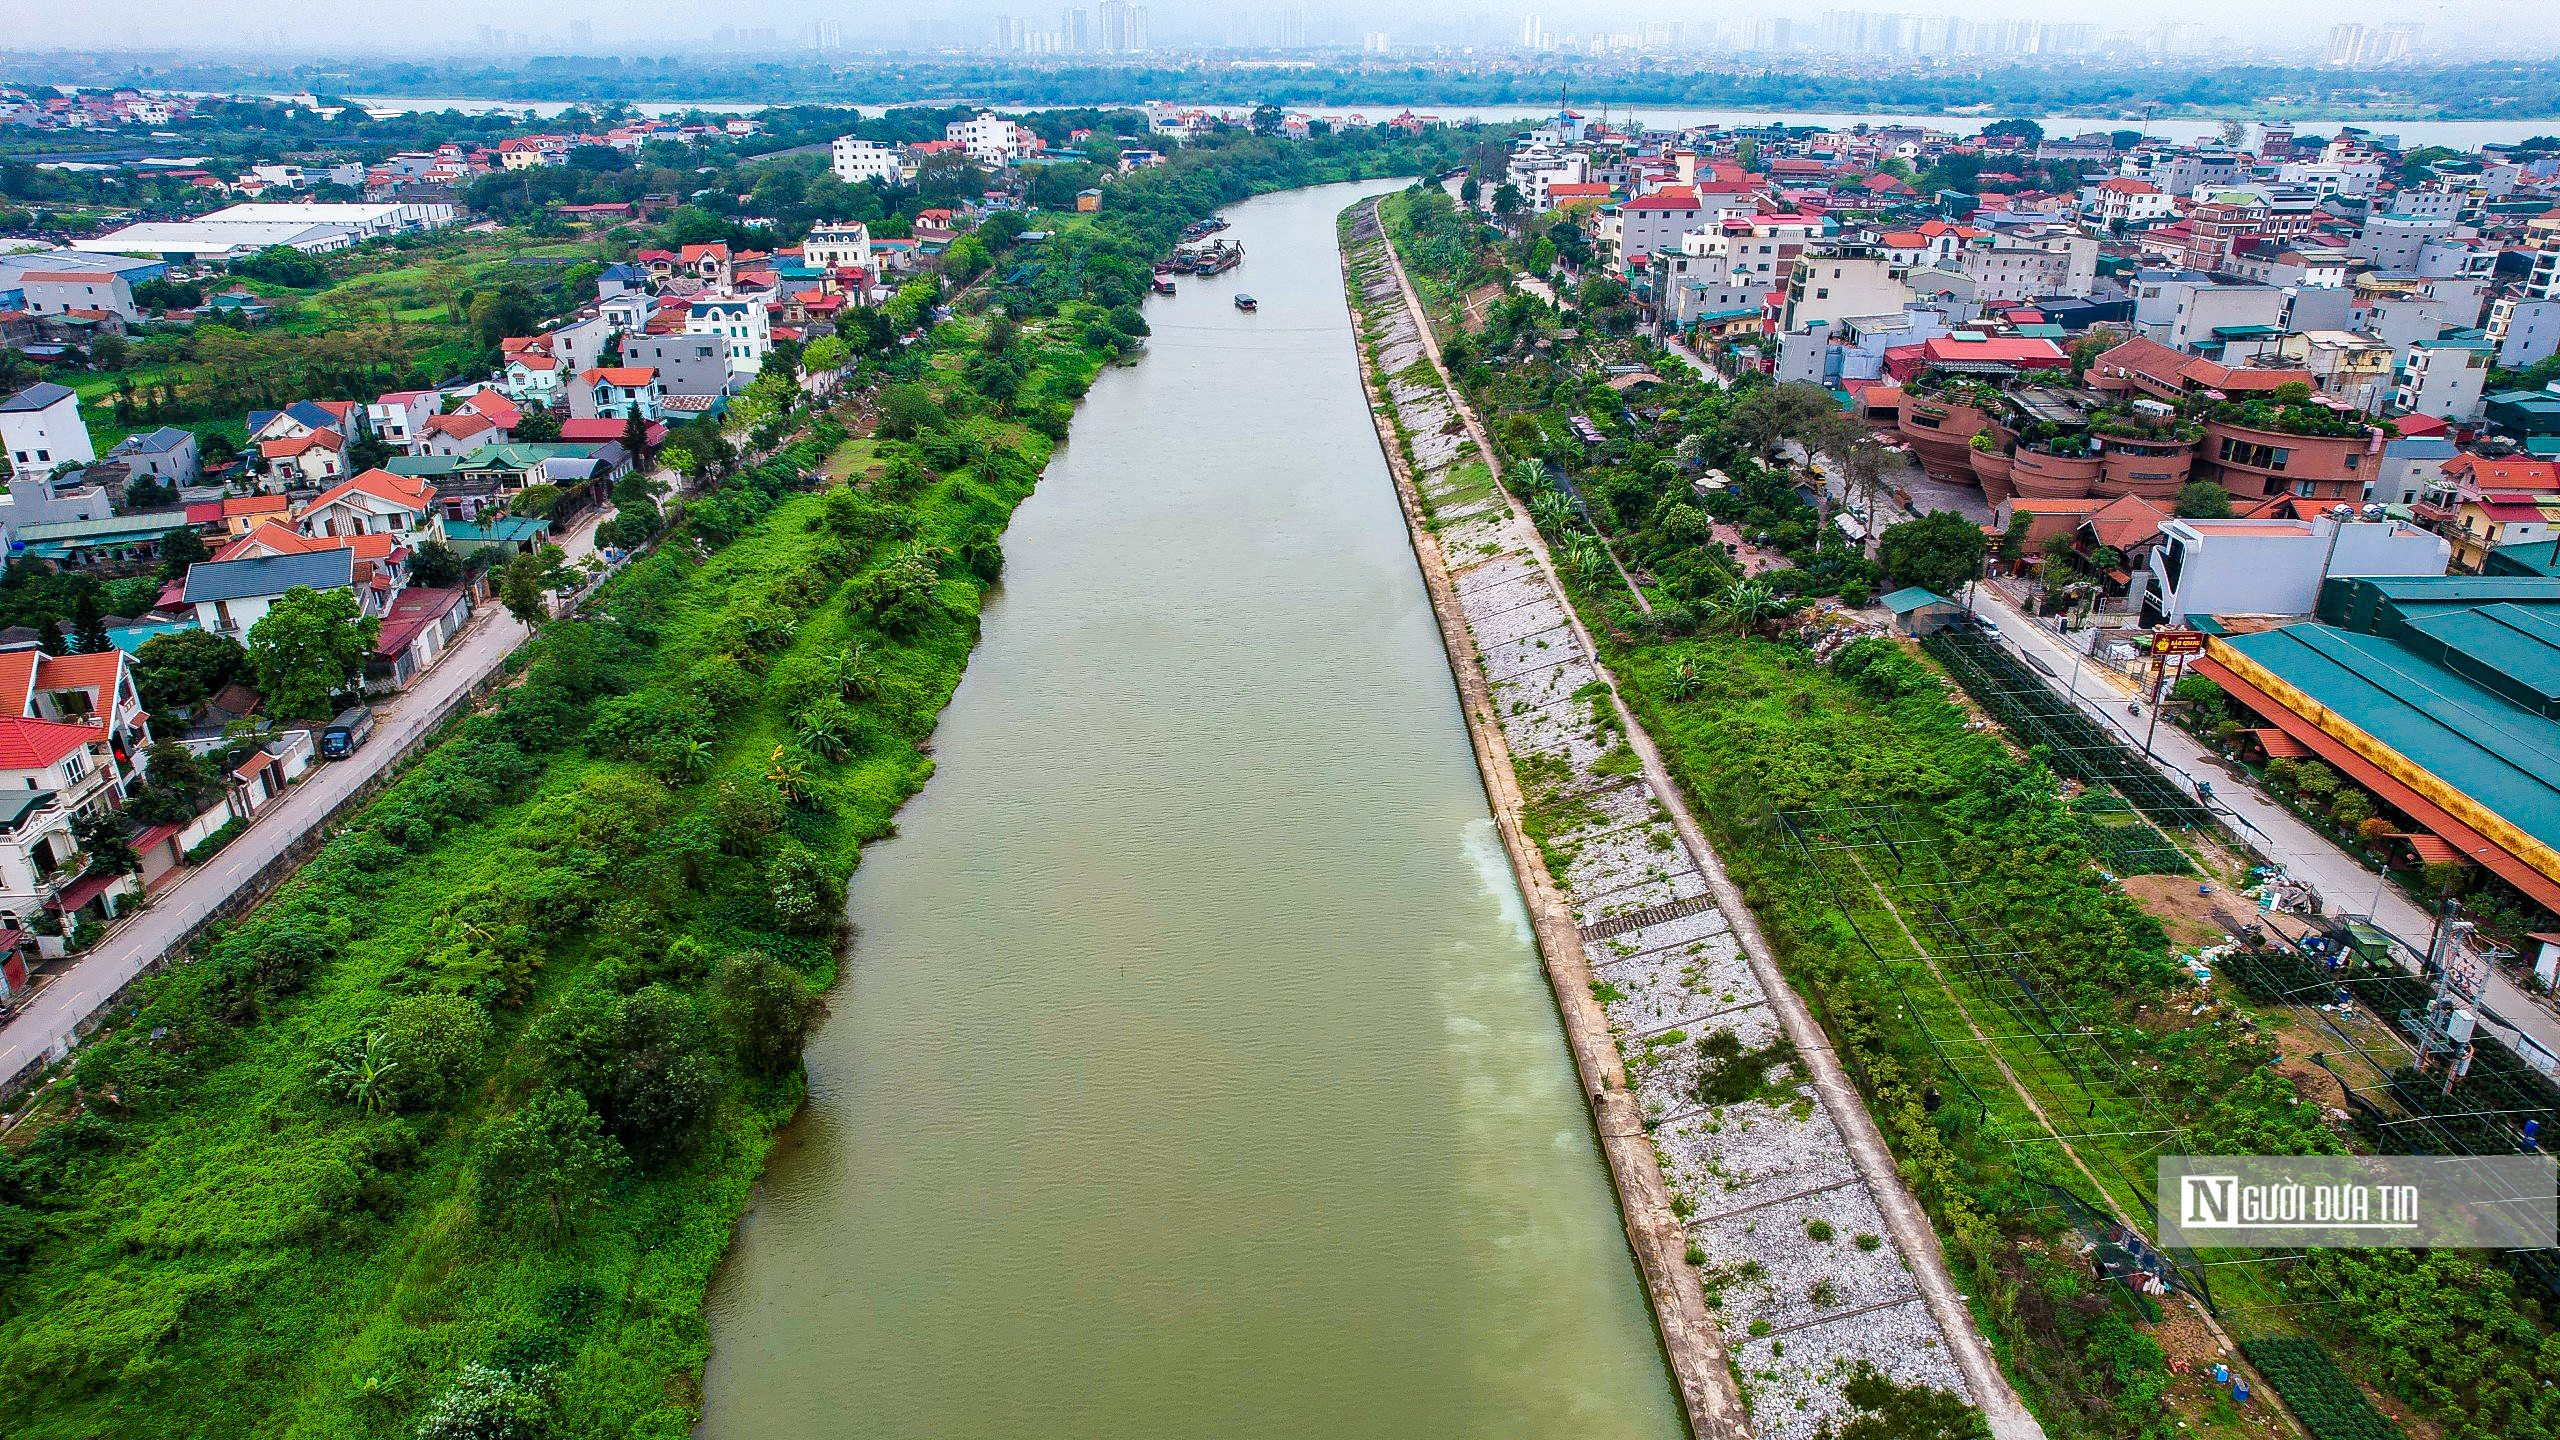 Dân sinh - Toàn cảnh vị trí sẽ xây dựng 2 đập dâng trên sông Hồng (Hình 2).